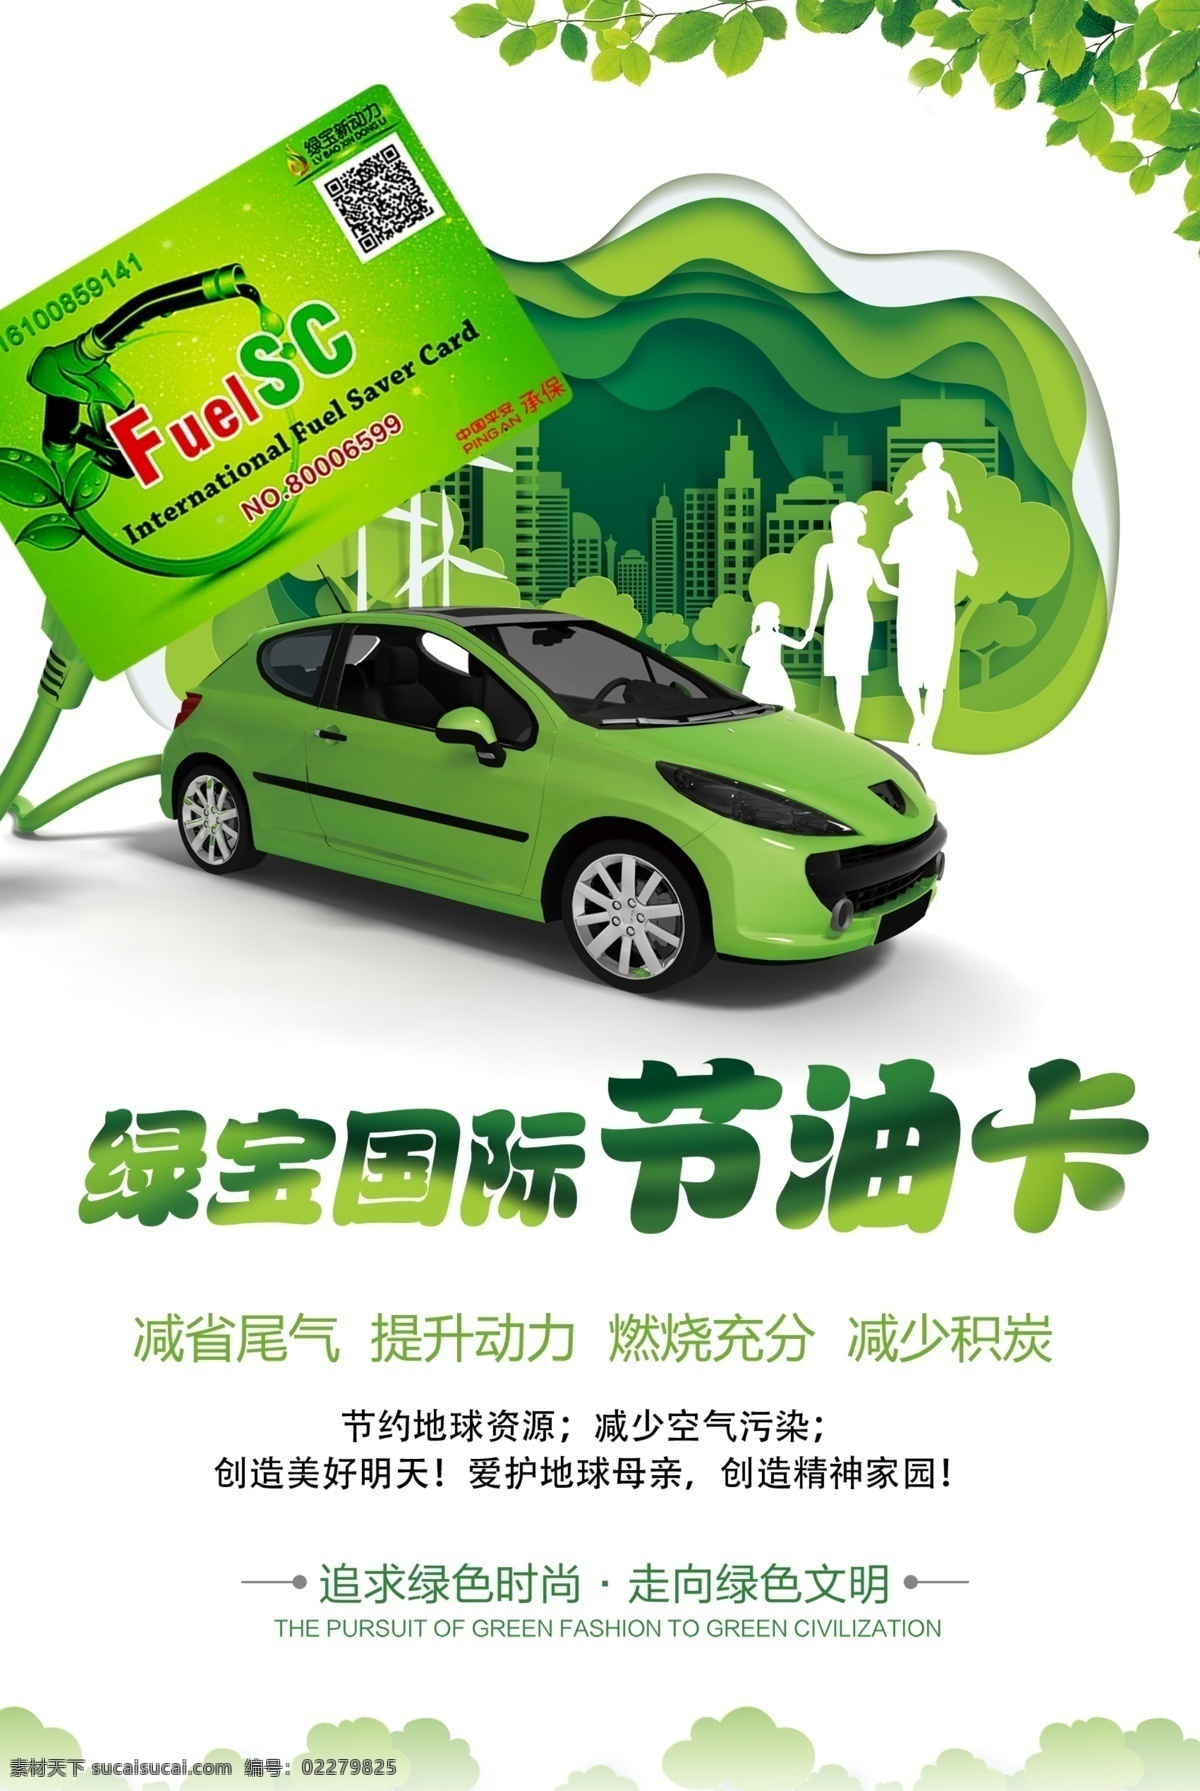 绿宝国际 节油卡 绿宝新动力 车 节油 绿宝海报